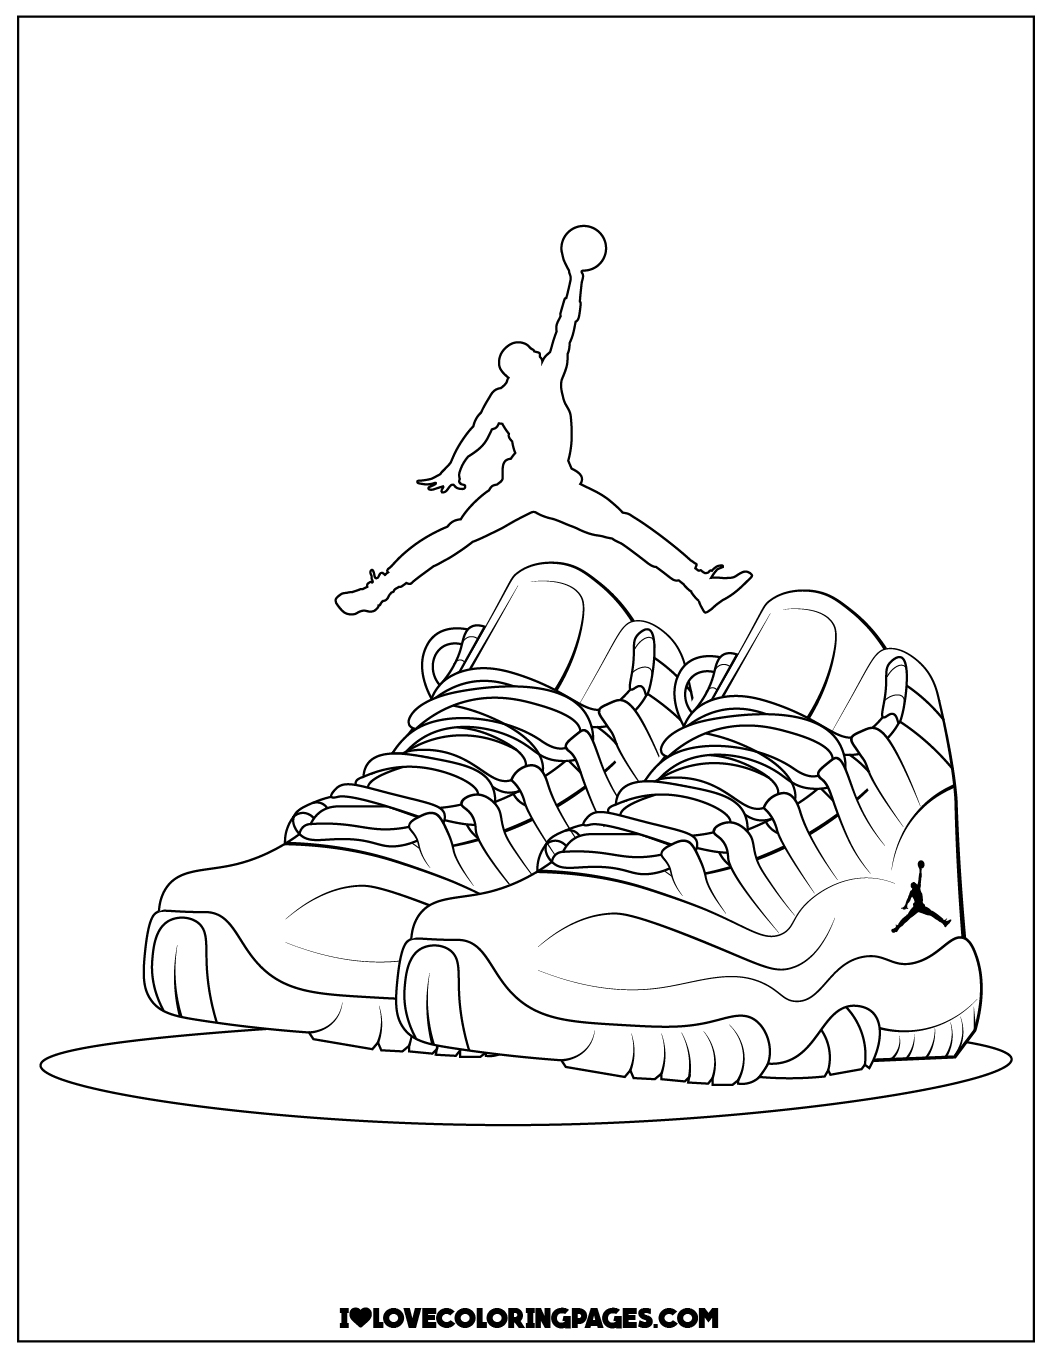 Jordan Shoes Coloring Pages Printable - ilovecoloringpages.com